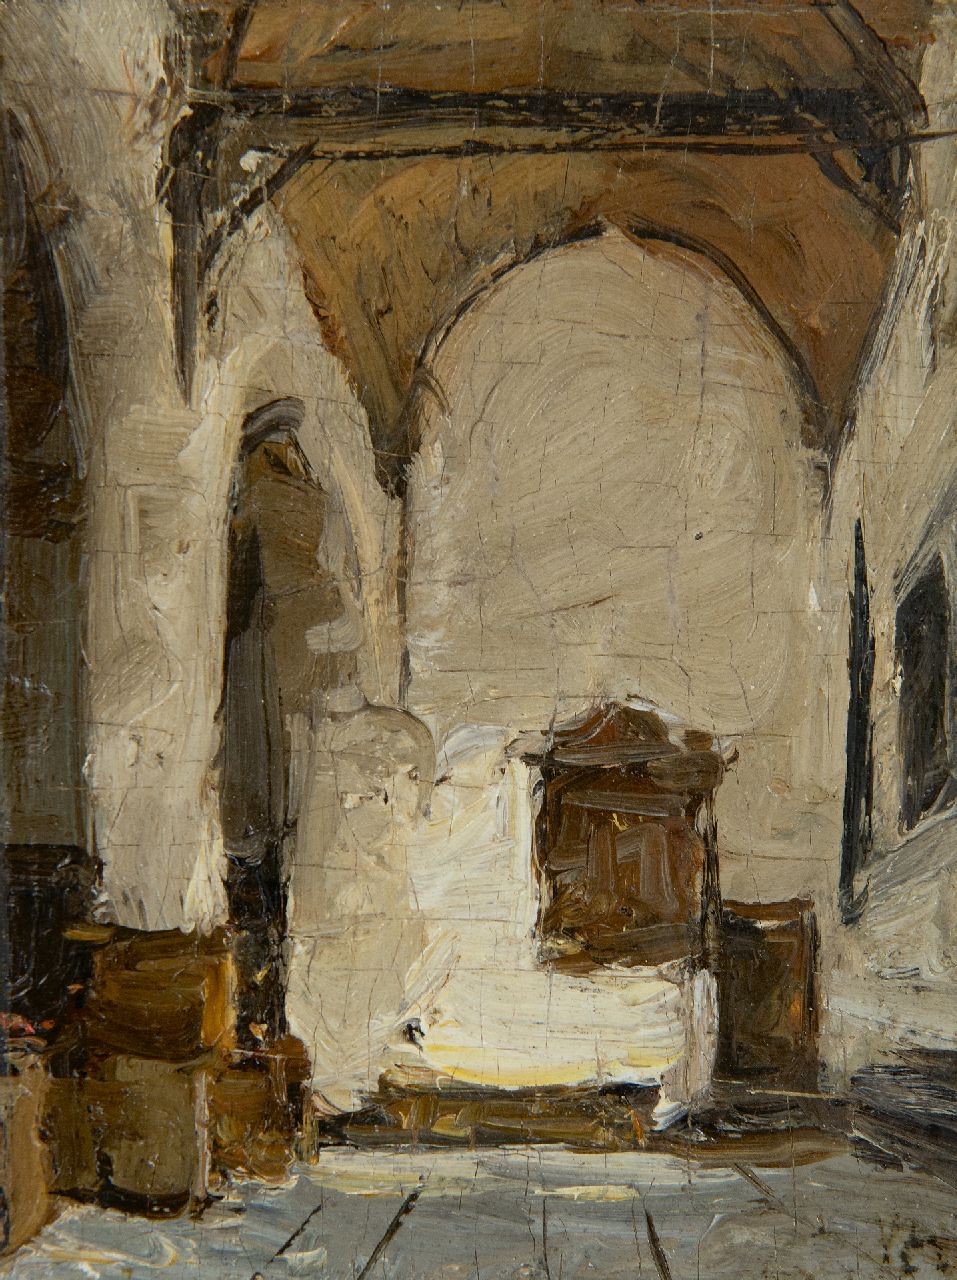 Bosboom J.  | Johannes Bosboom | Schilderijen te koop aangeboden | Kerkinterieur, olieverf op paneel 12,0 x 9,1 cm, gesigneerd rechtsonder met initialen